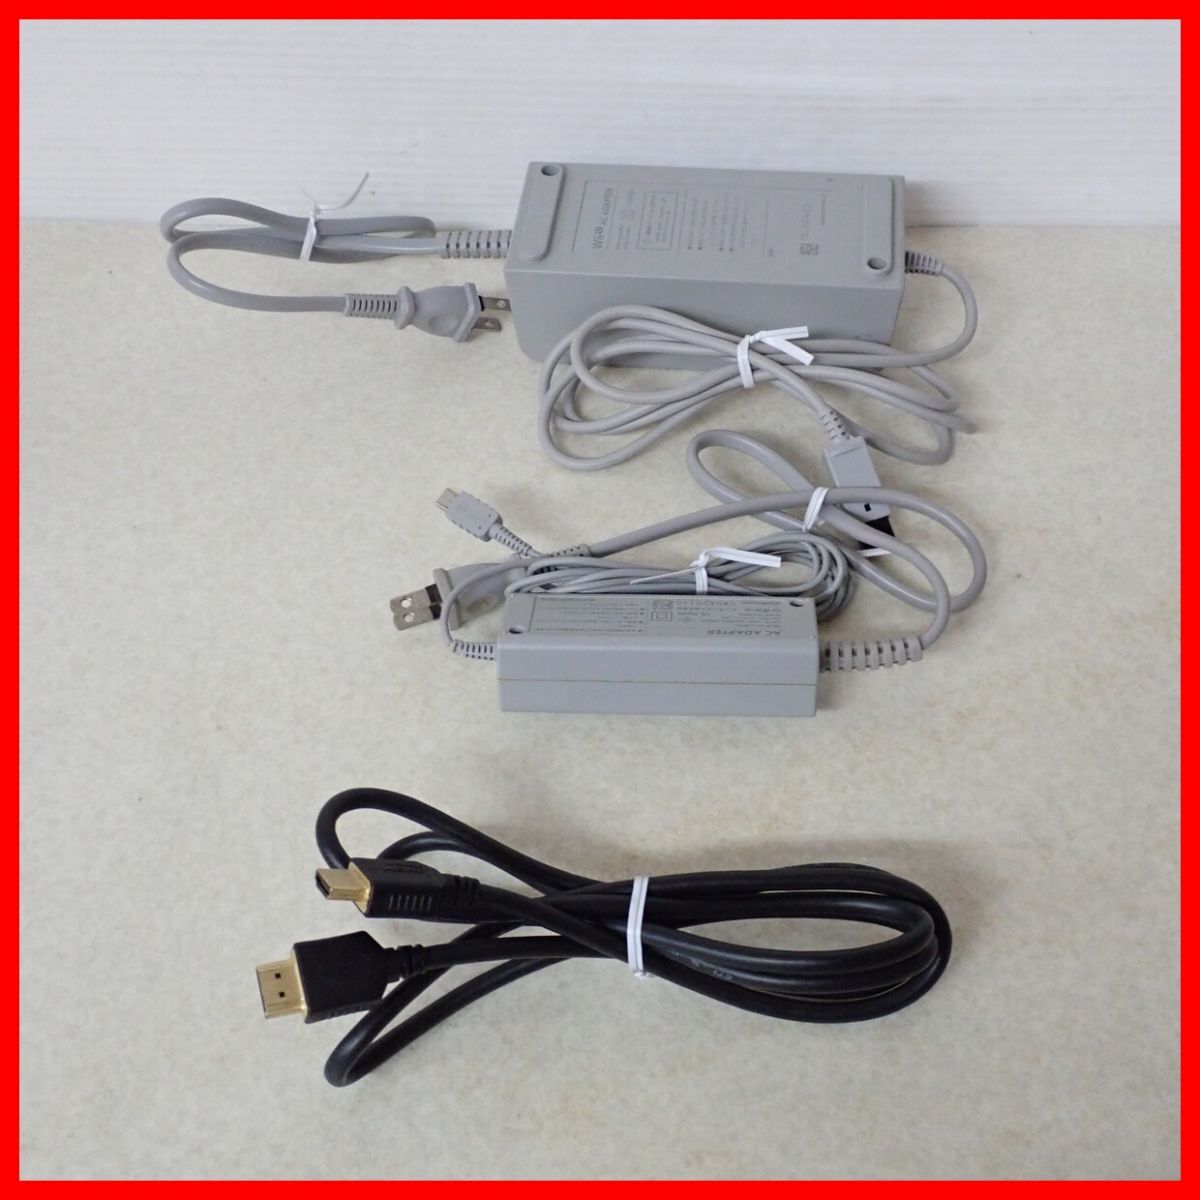  рабочий товар WiiU 32GB корпус белый Nintendo nintendo [20